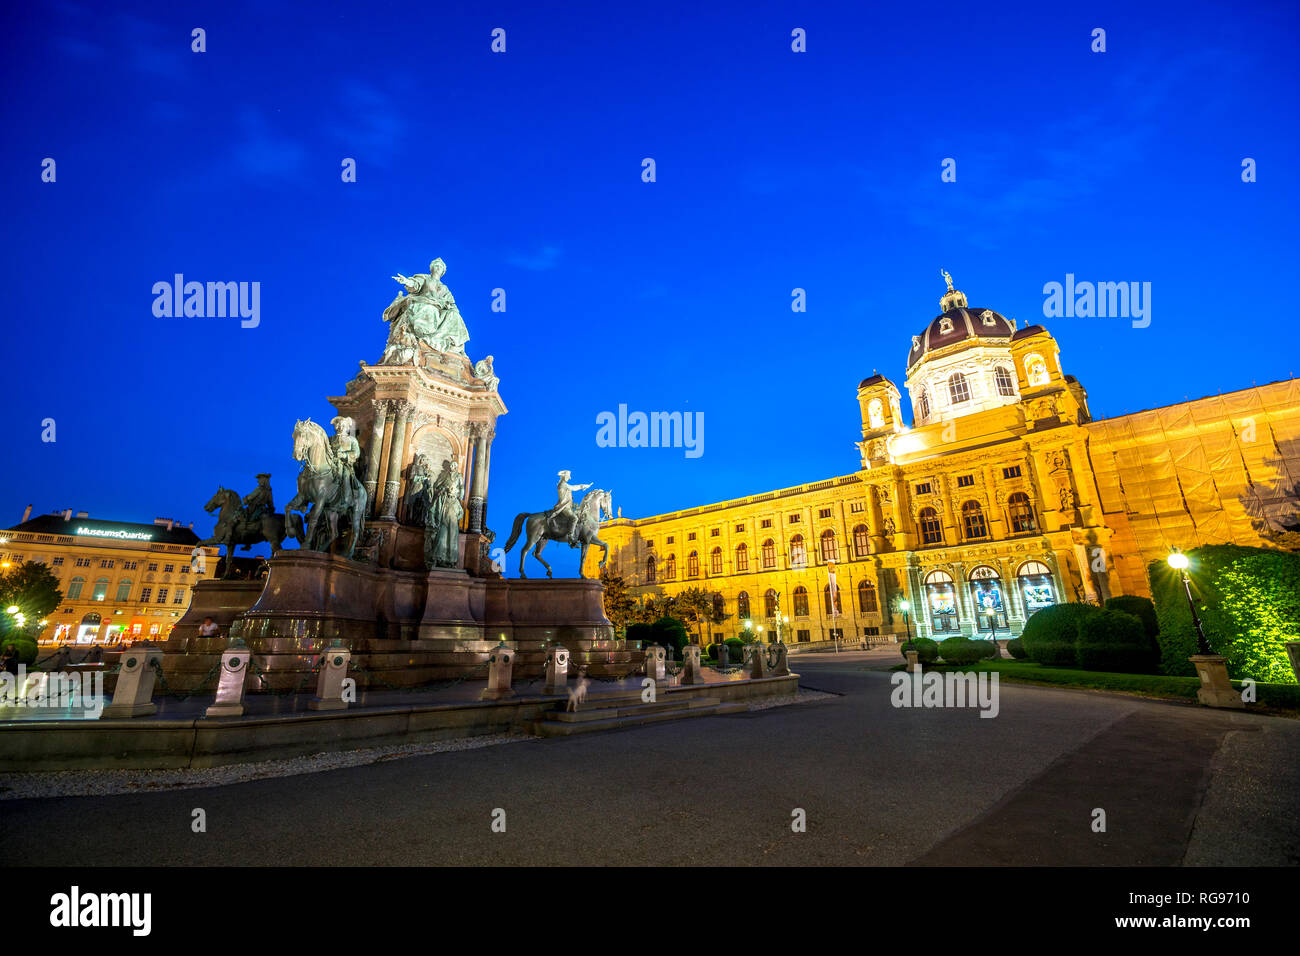 L'Autriche, Vienne, Maria-Theresien-Platz, Musée d'histoire de l'art et musée d'Histoire Naturelle Banque D'Images